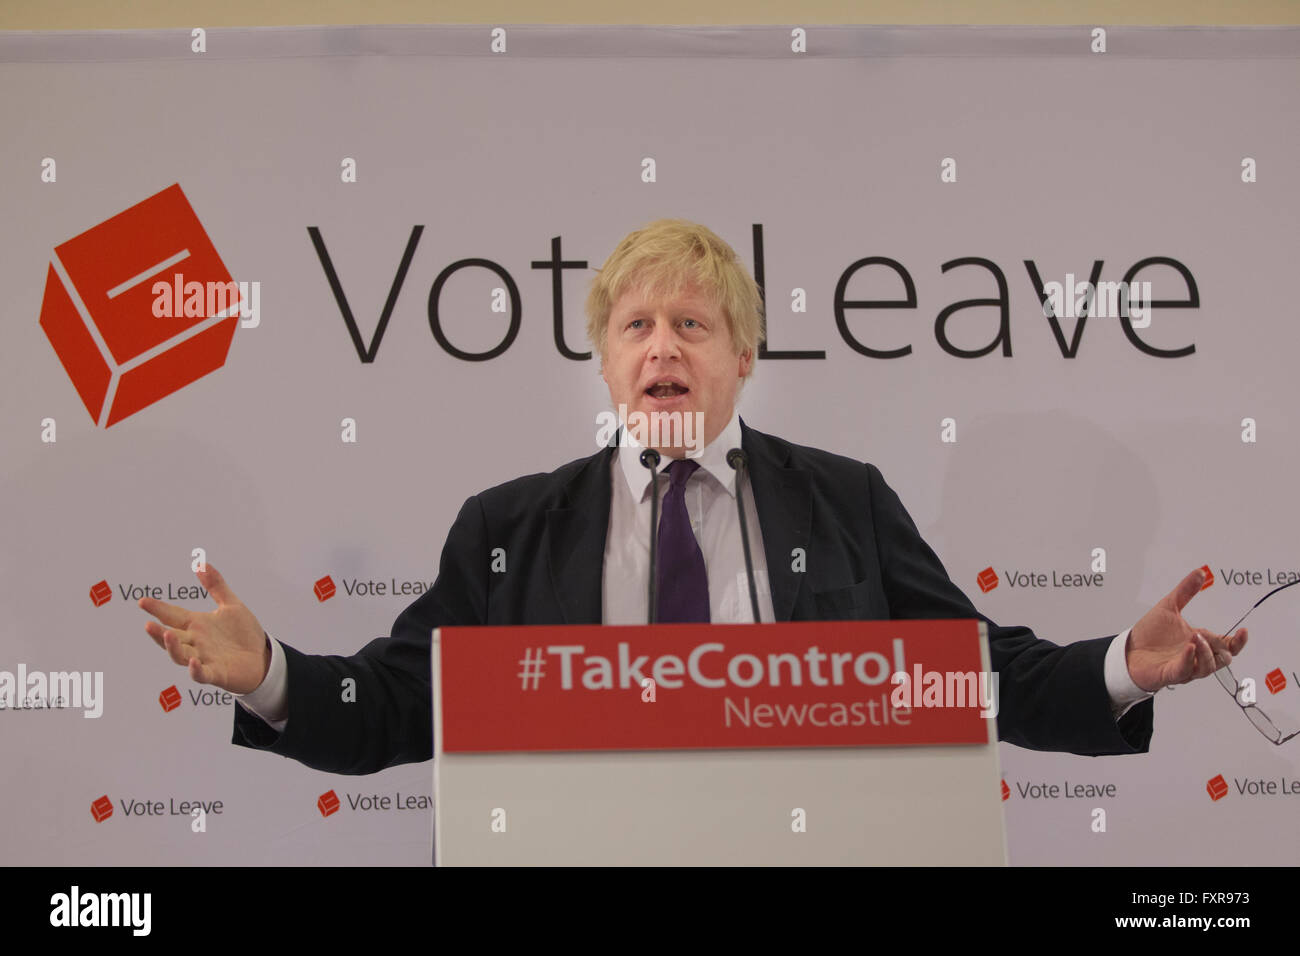 Brexit 'Abstimmung verlassen' Rallye von Boris Johnson MP Wahlkampf um den Euro zu verlassen, am 23. Juni statt Referendum, Newcastle, England UK Stockfoto